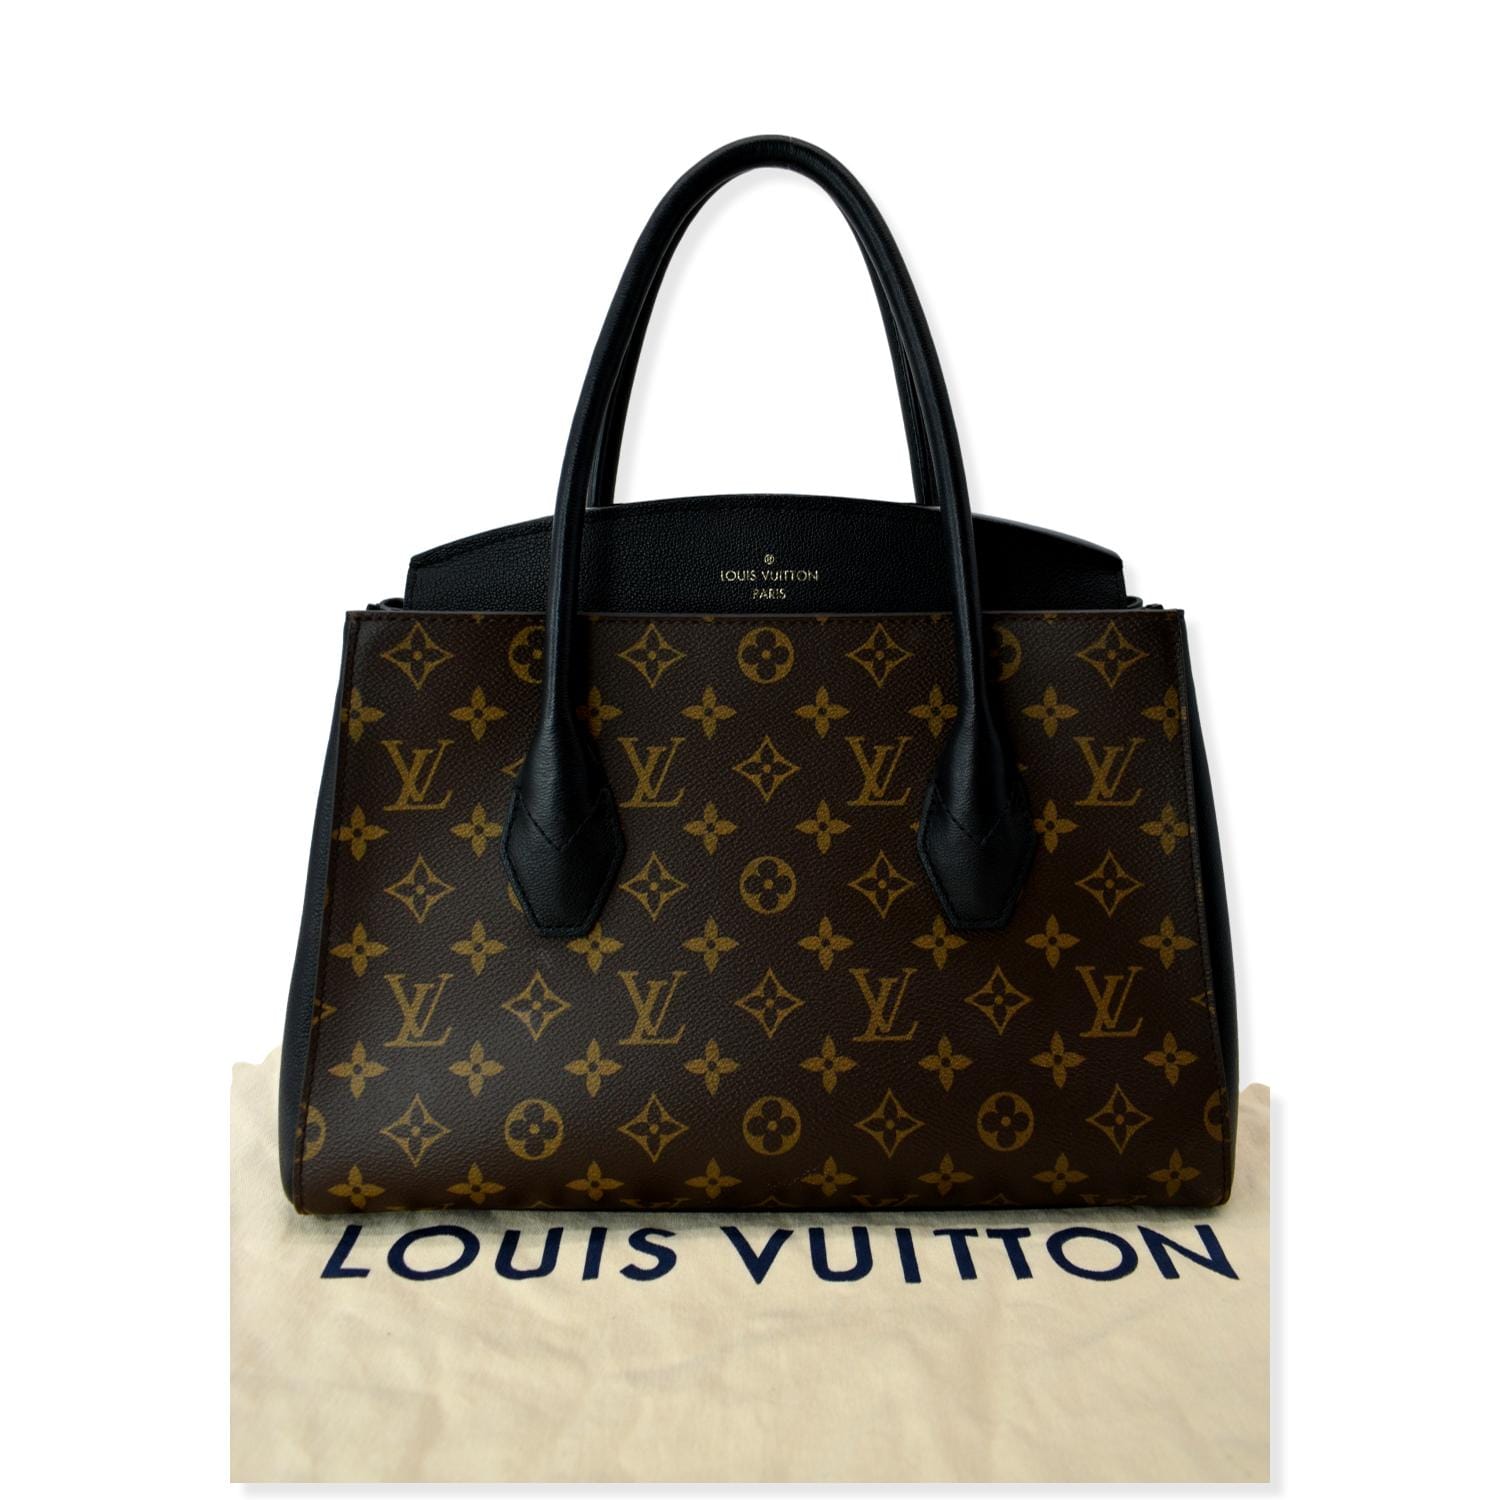 Louis Vuitton Florin Geldbörse,Echt oder Fälschung? (Original